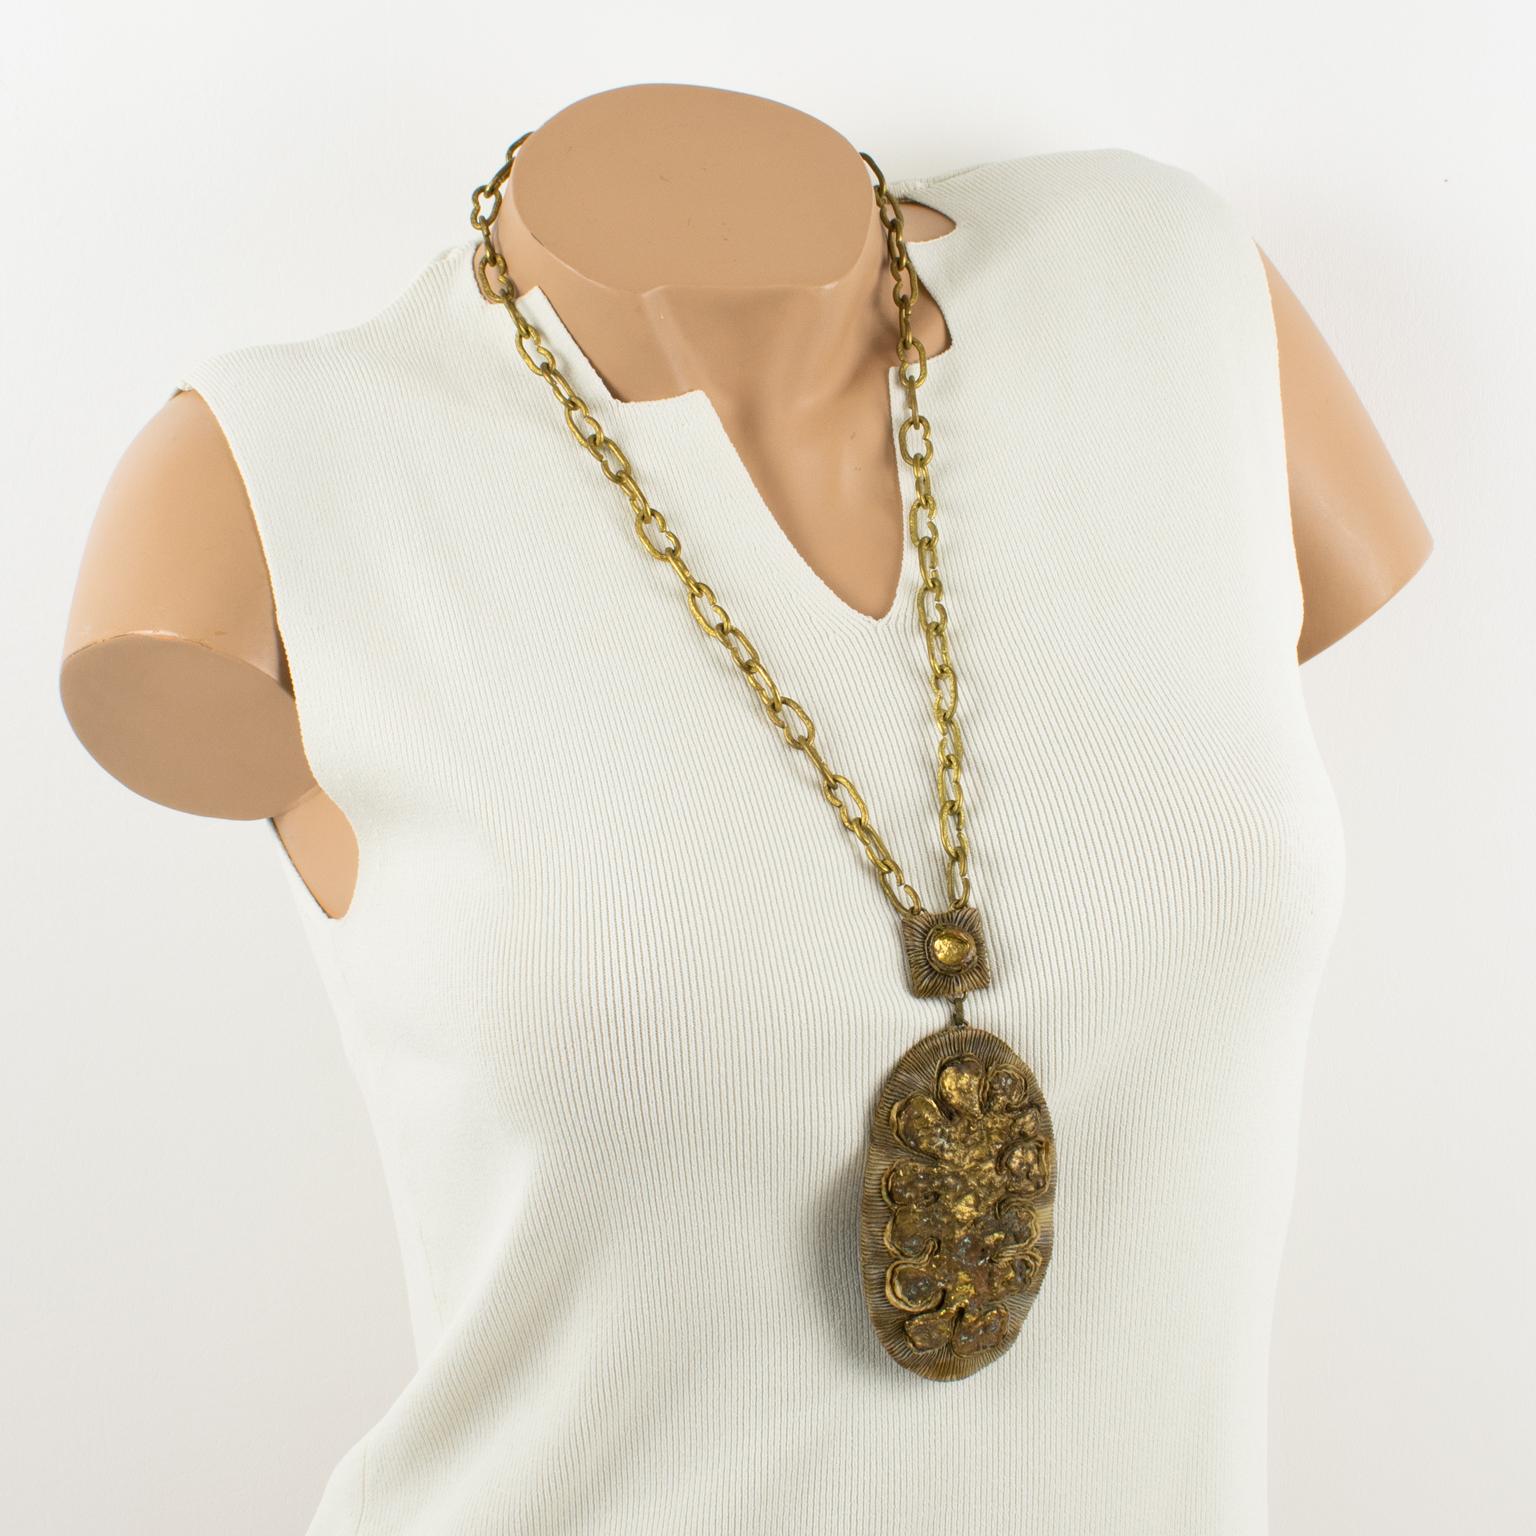 L'artiste joaillier français Henry Perichon (alias Henry) a conçu ce collier unique en talosel et en bronze dans les années 1960. La pièce comporte une chaîne lourde dorée et travaillée, complétée par un pendentif ovale en résine Talosel de couleur